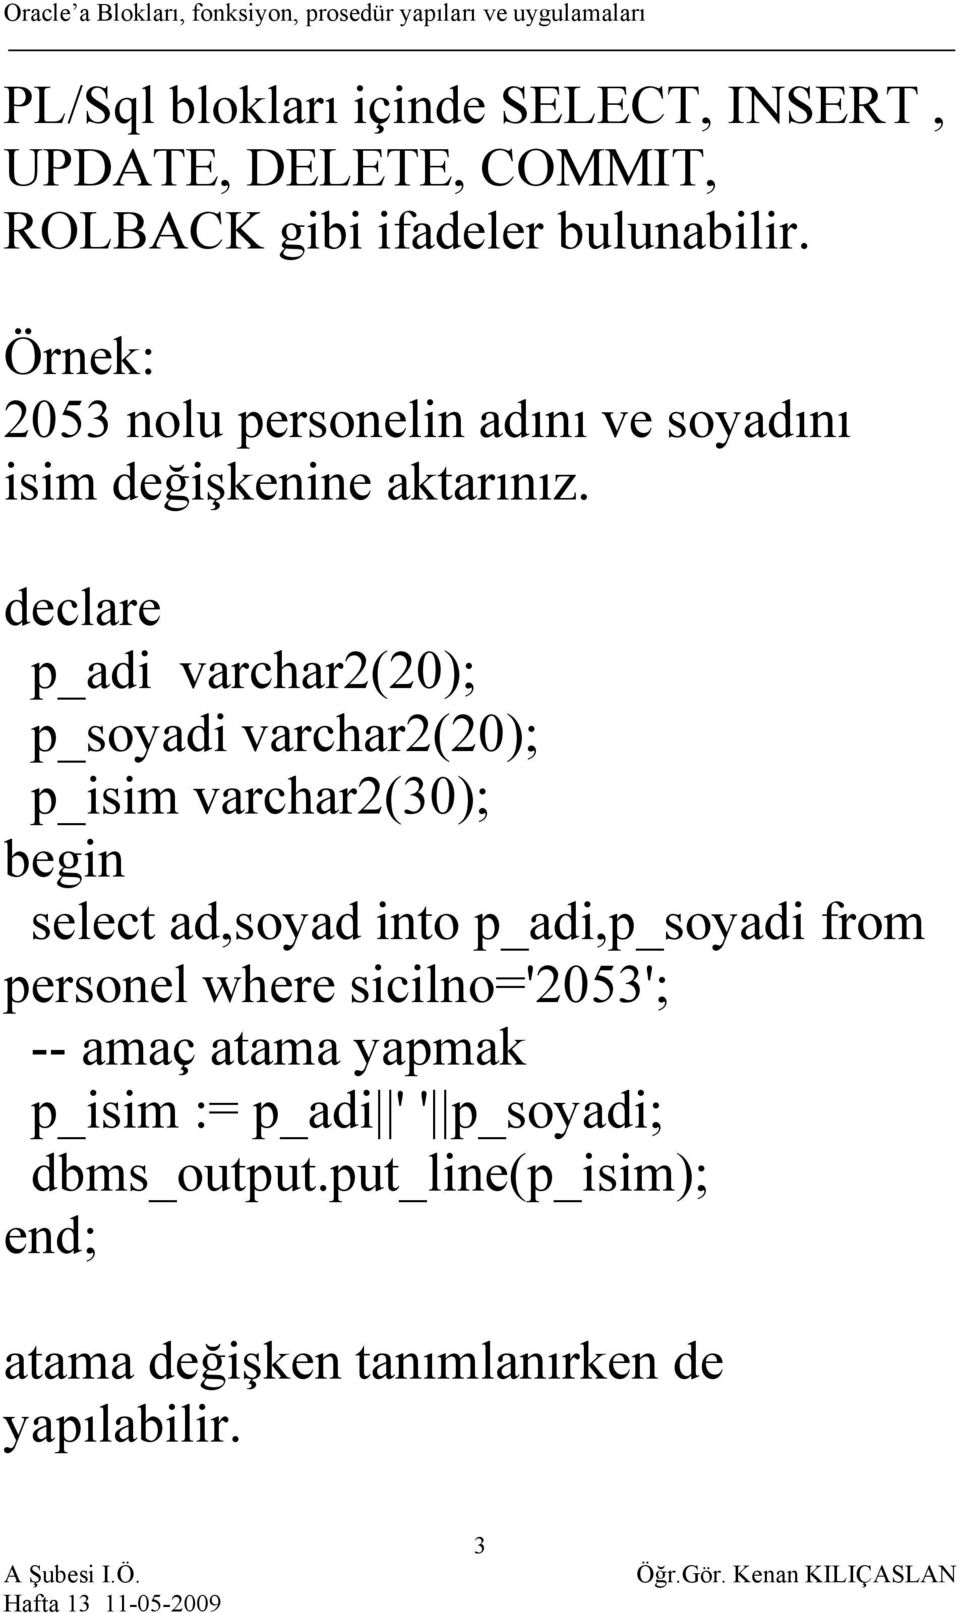 p_adi varchar2(20); p_soyadi varchar2(20); p_isim varchar2(30); select ad,soyad into p_adi,p_soyadi from